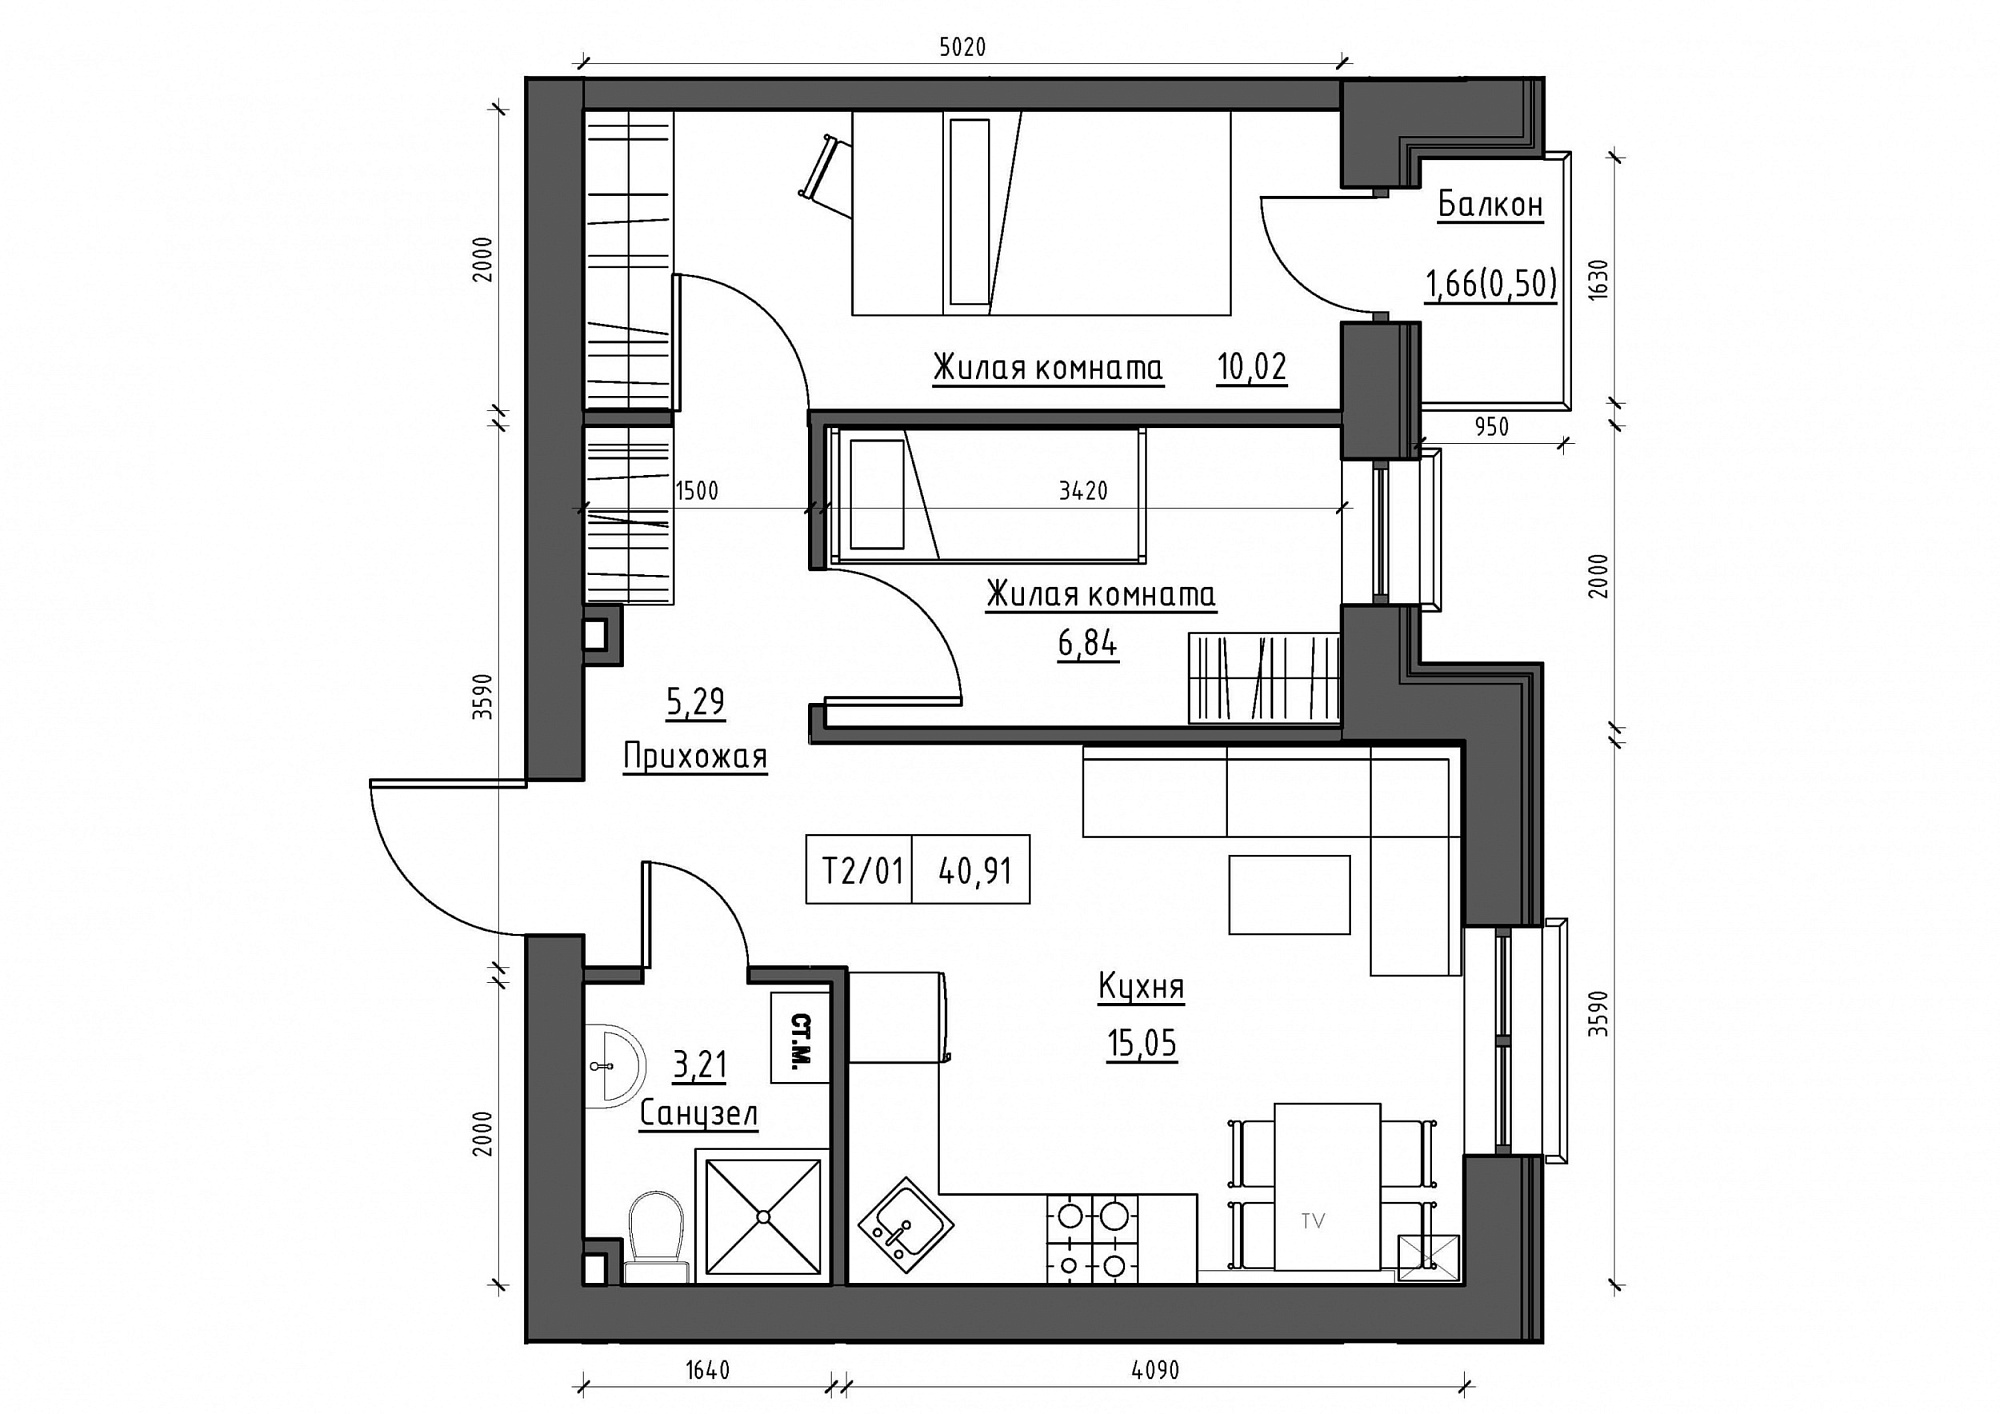 Планування 2-к квартира площею 40.91м2, KS-011-03/0006.